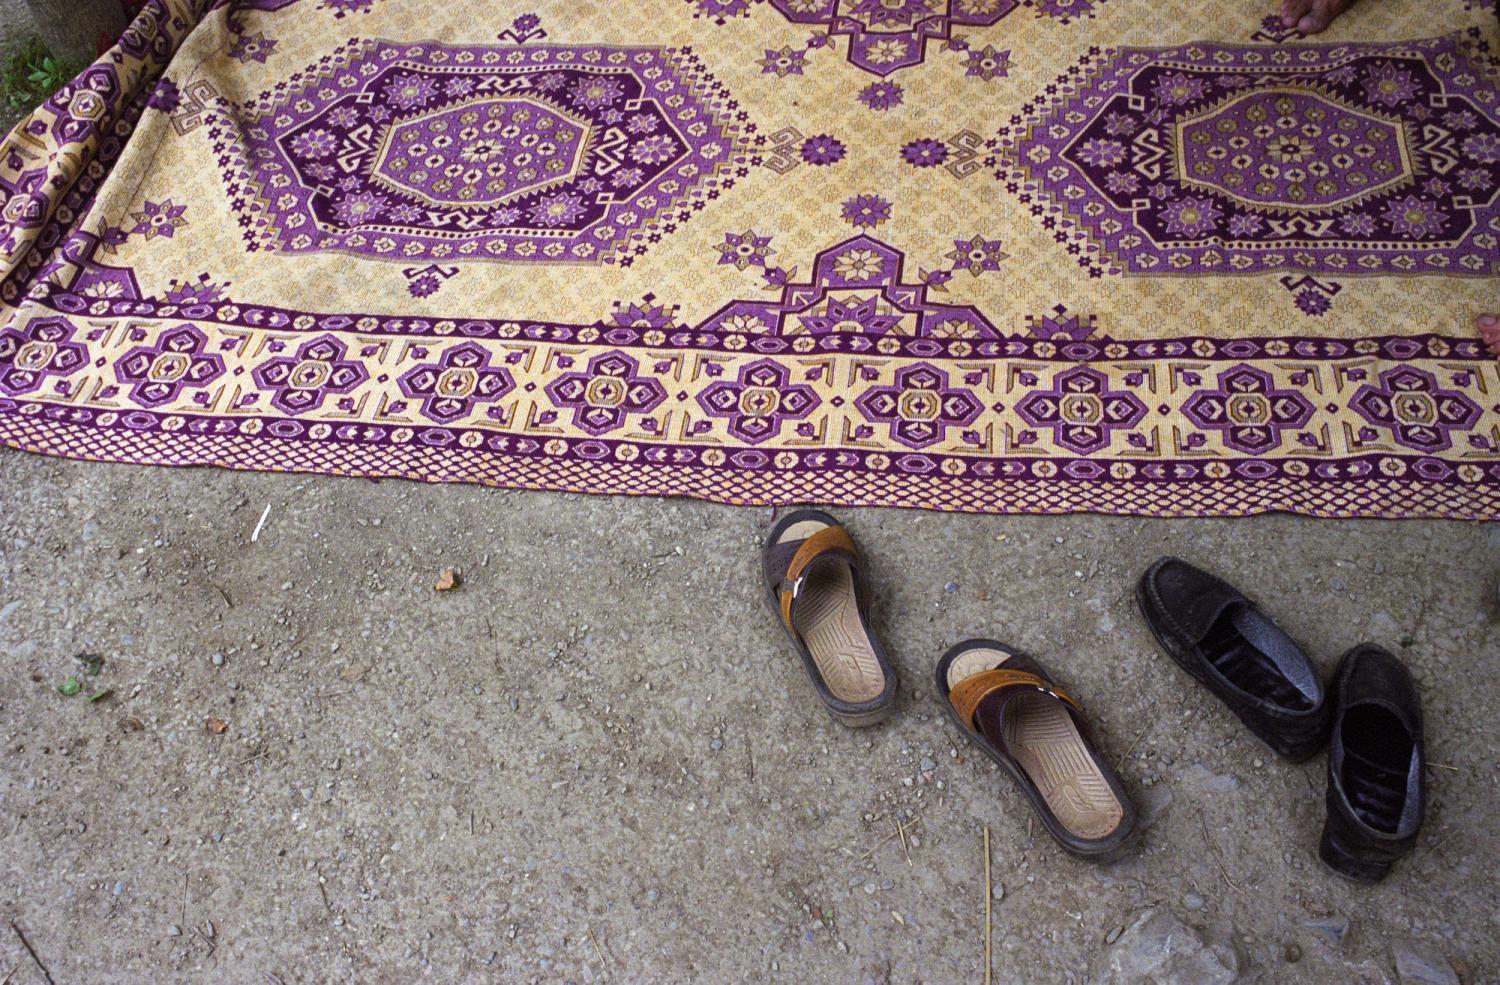 Un tapis et les chaussures de ses occupants. Masuleh, Iran, août 2006.